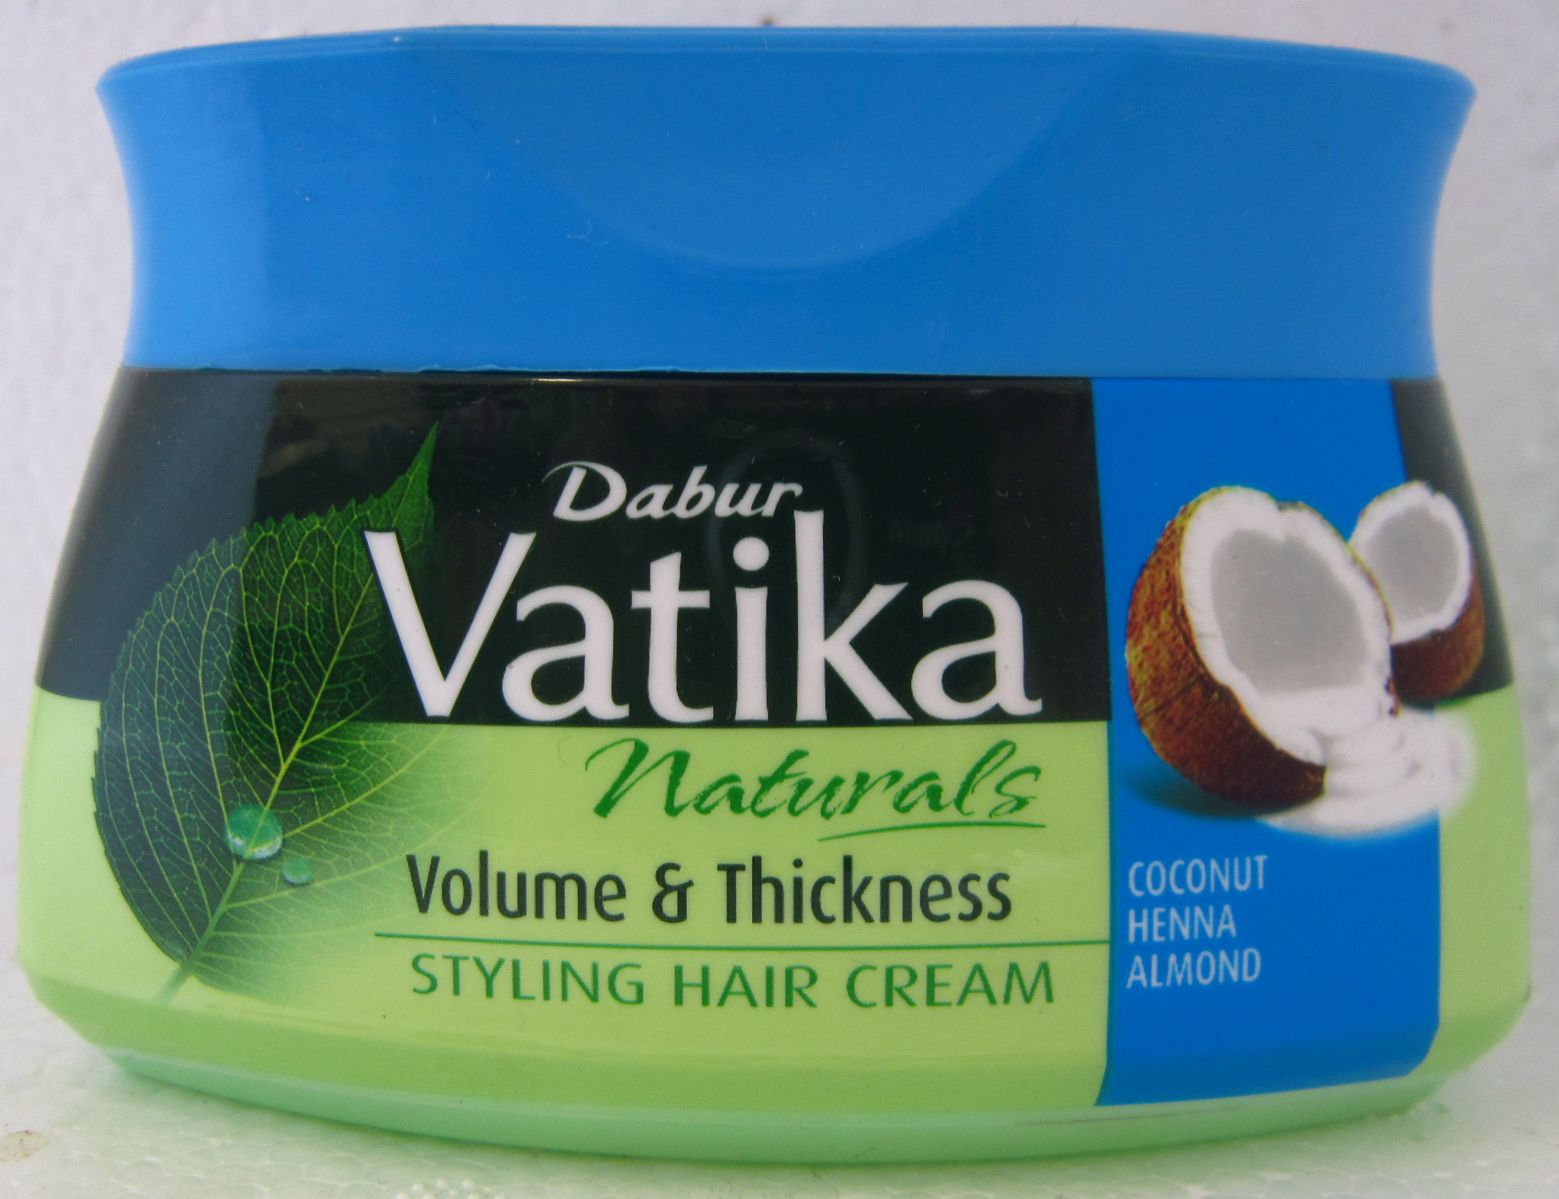 Dabur Vatika Volume & Thickness Styling Hair Cream Image